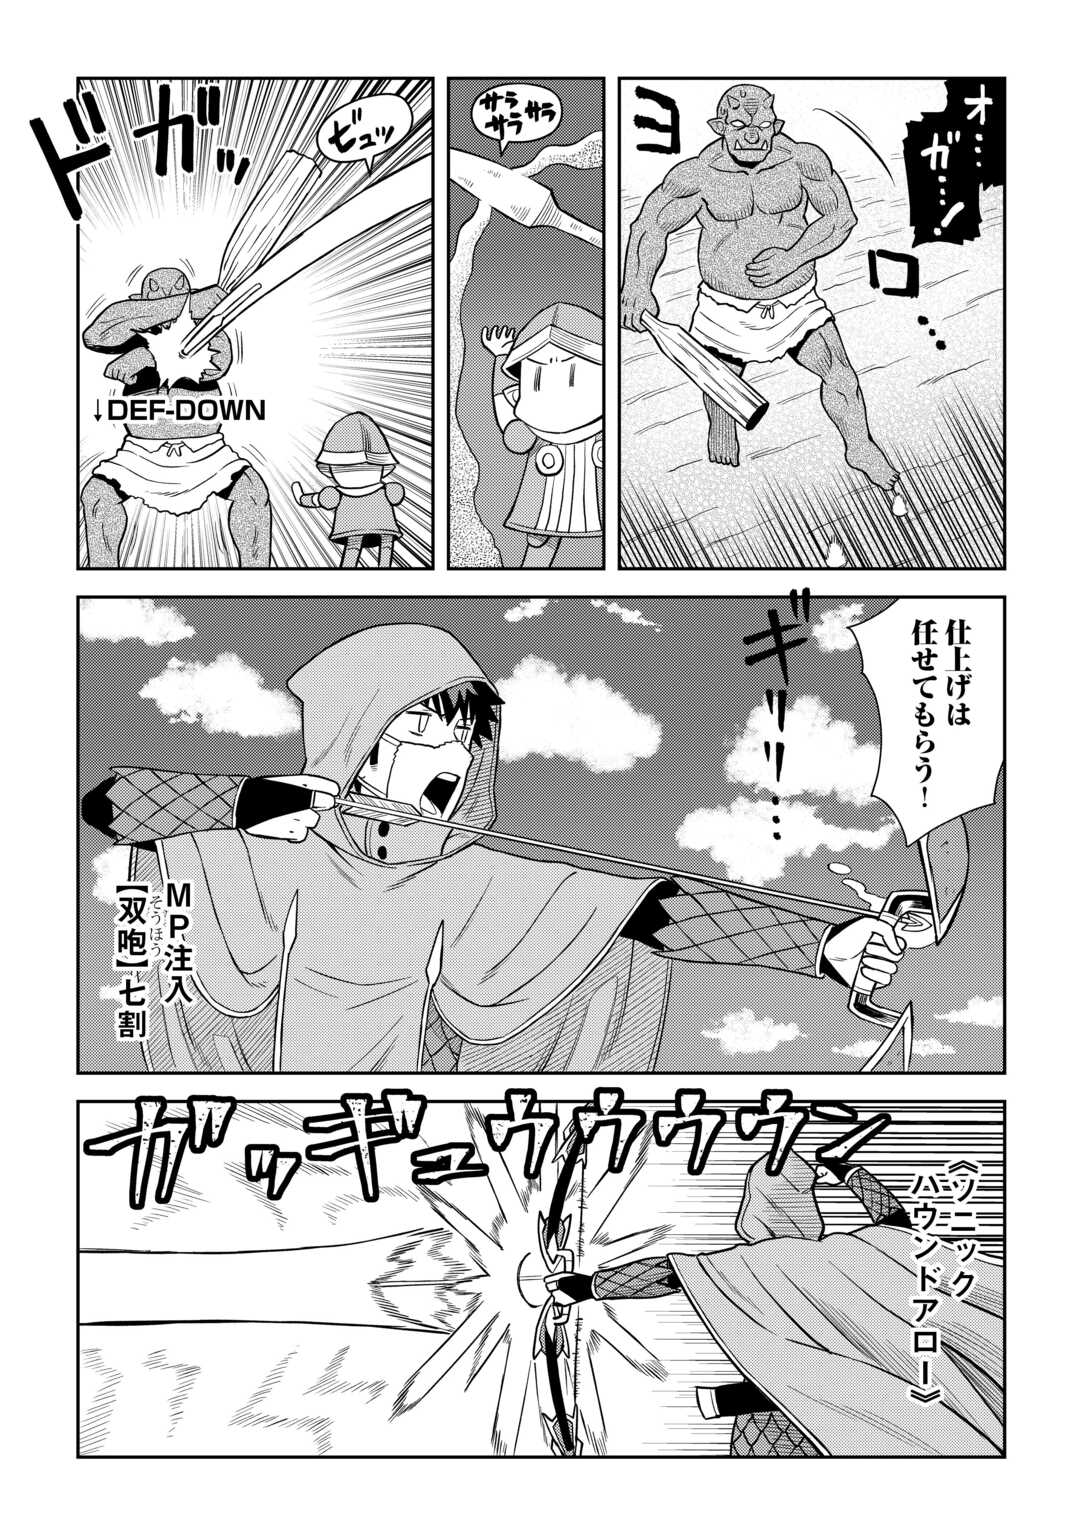 Toaru Ossan no VRMMO Katsudouki - Chapter 97 - Page 22